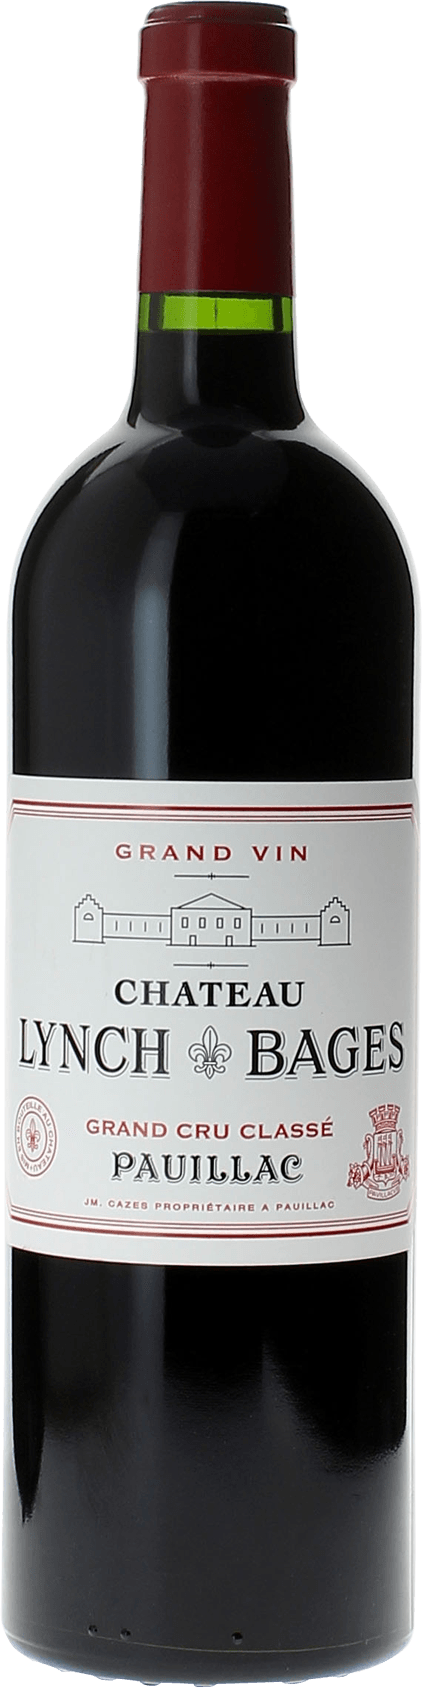 Lynch bages 1995 5 me Grand cru class Pauillac, Bordeaux rouge